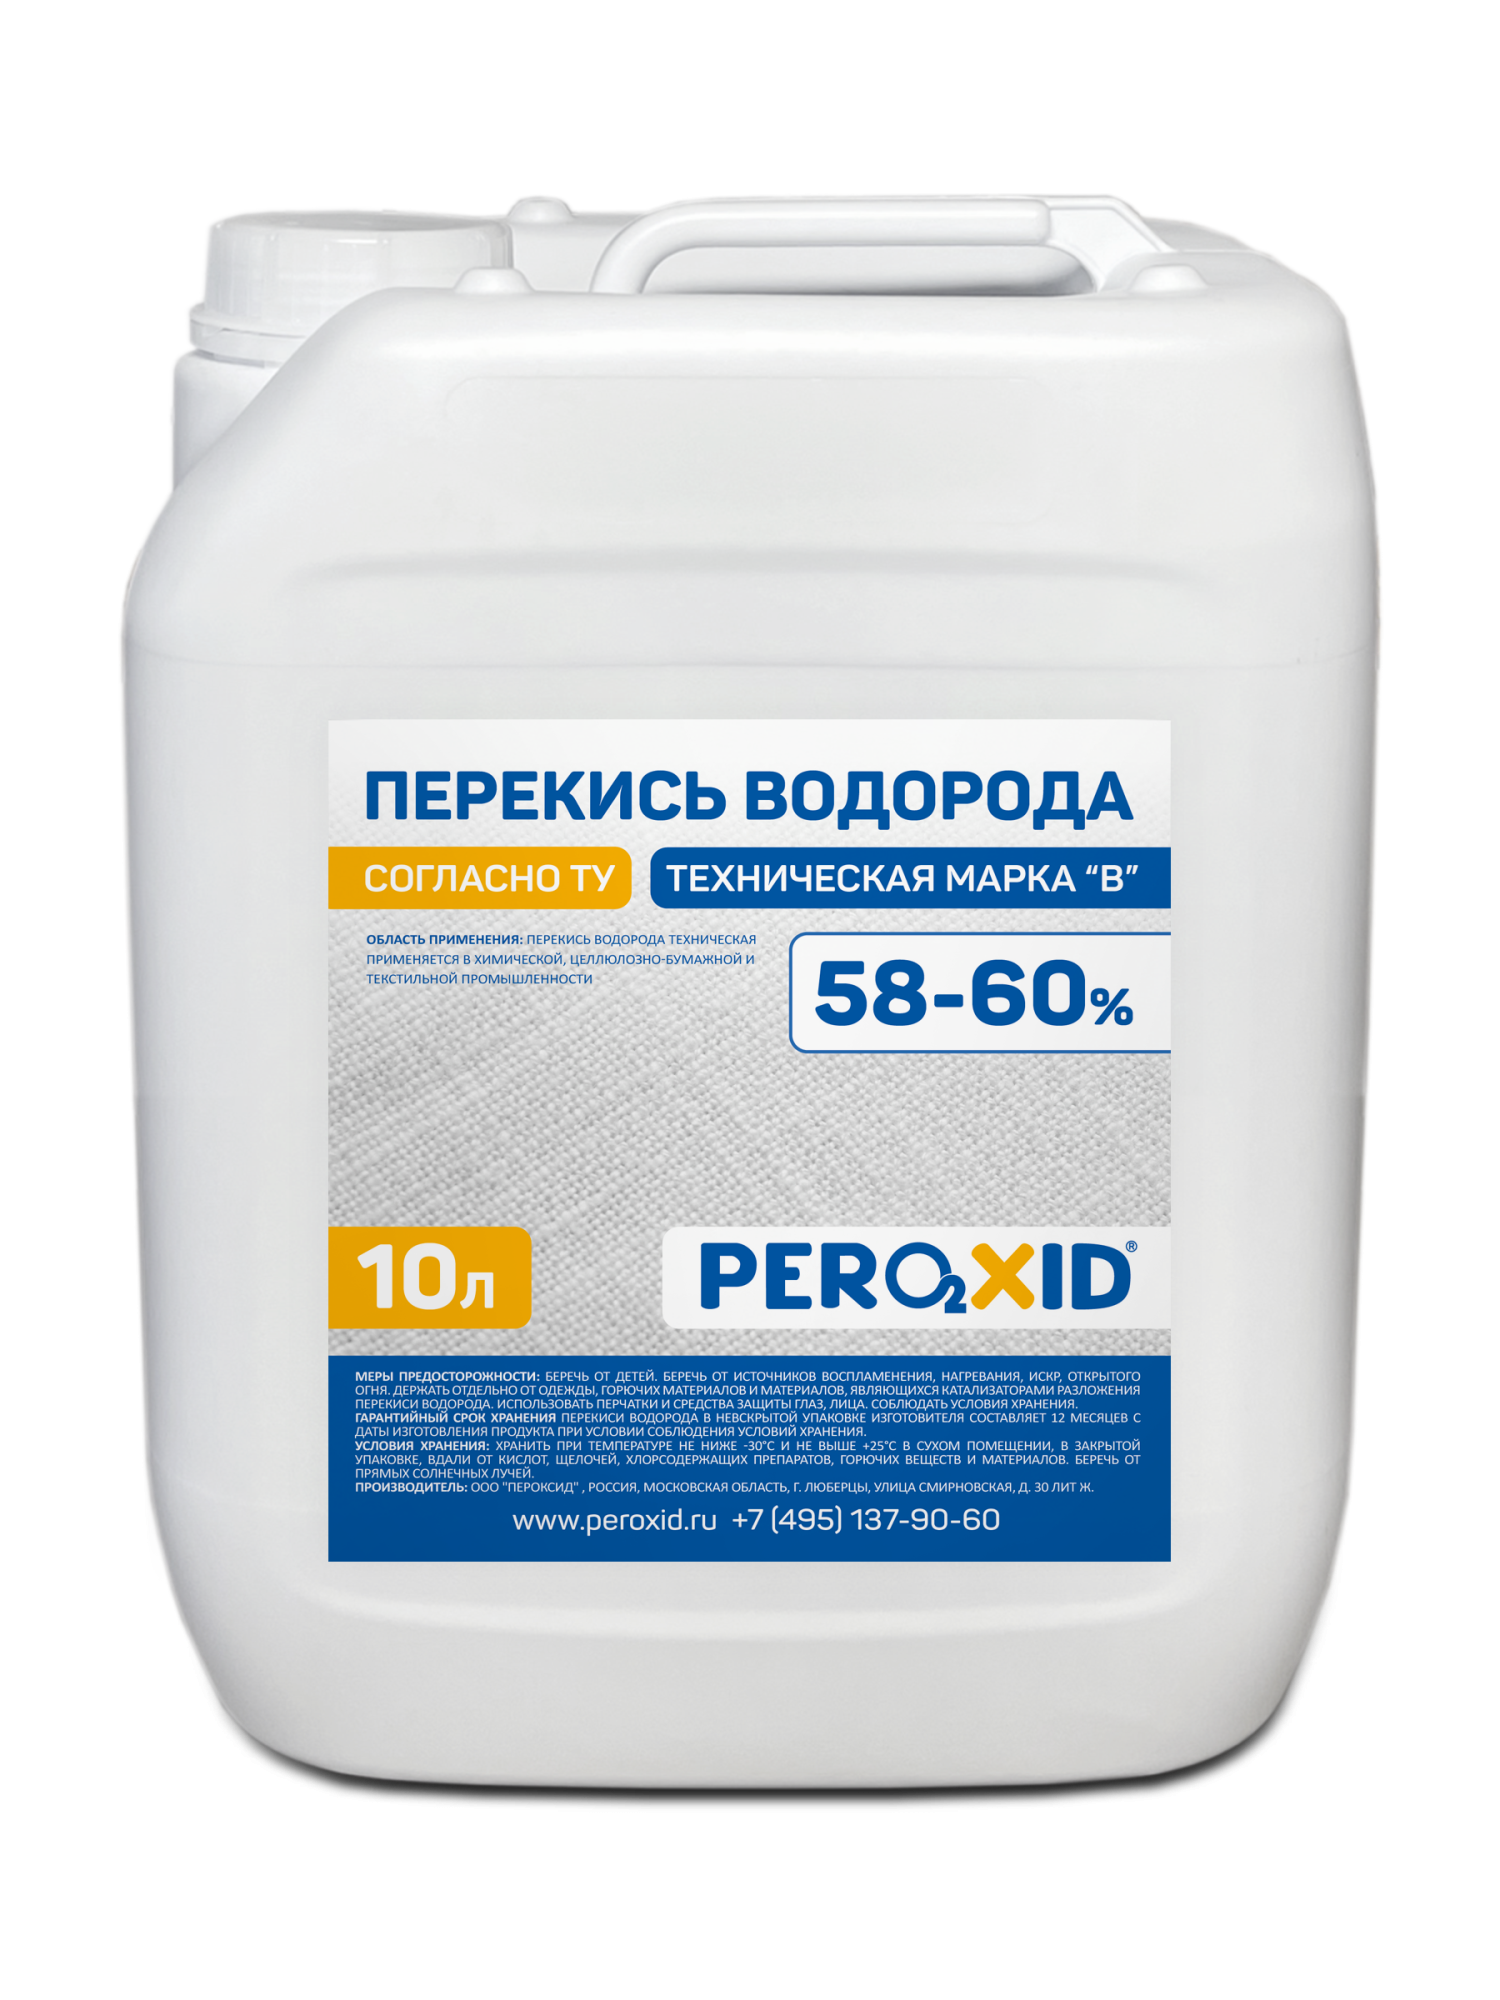 Перекись водорода техническая PEROXID 58-60% марка В ТУ 2123-002-25665344-2008 10 л/12 кг